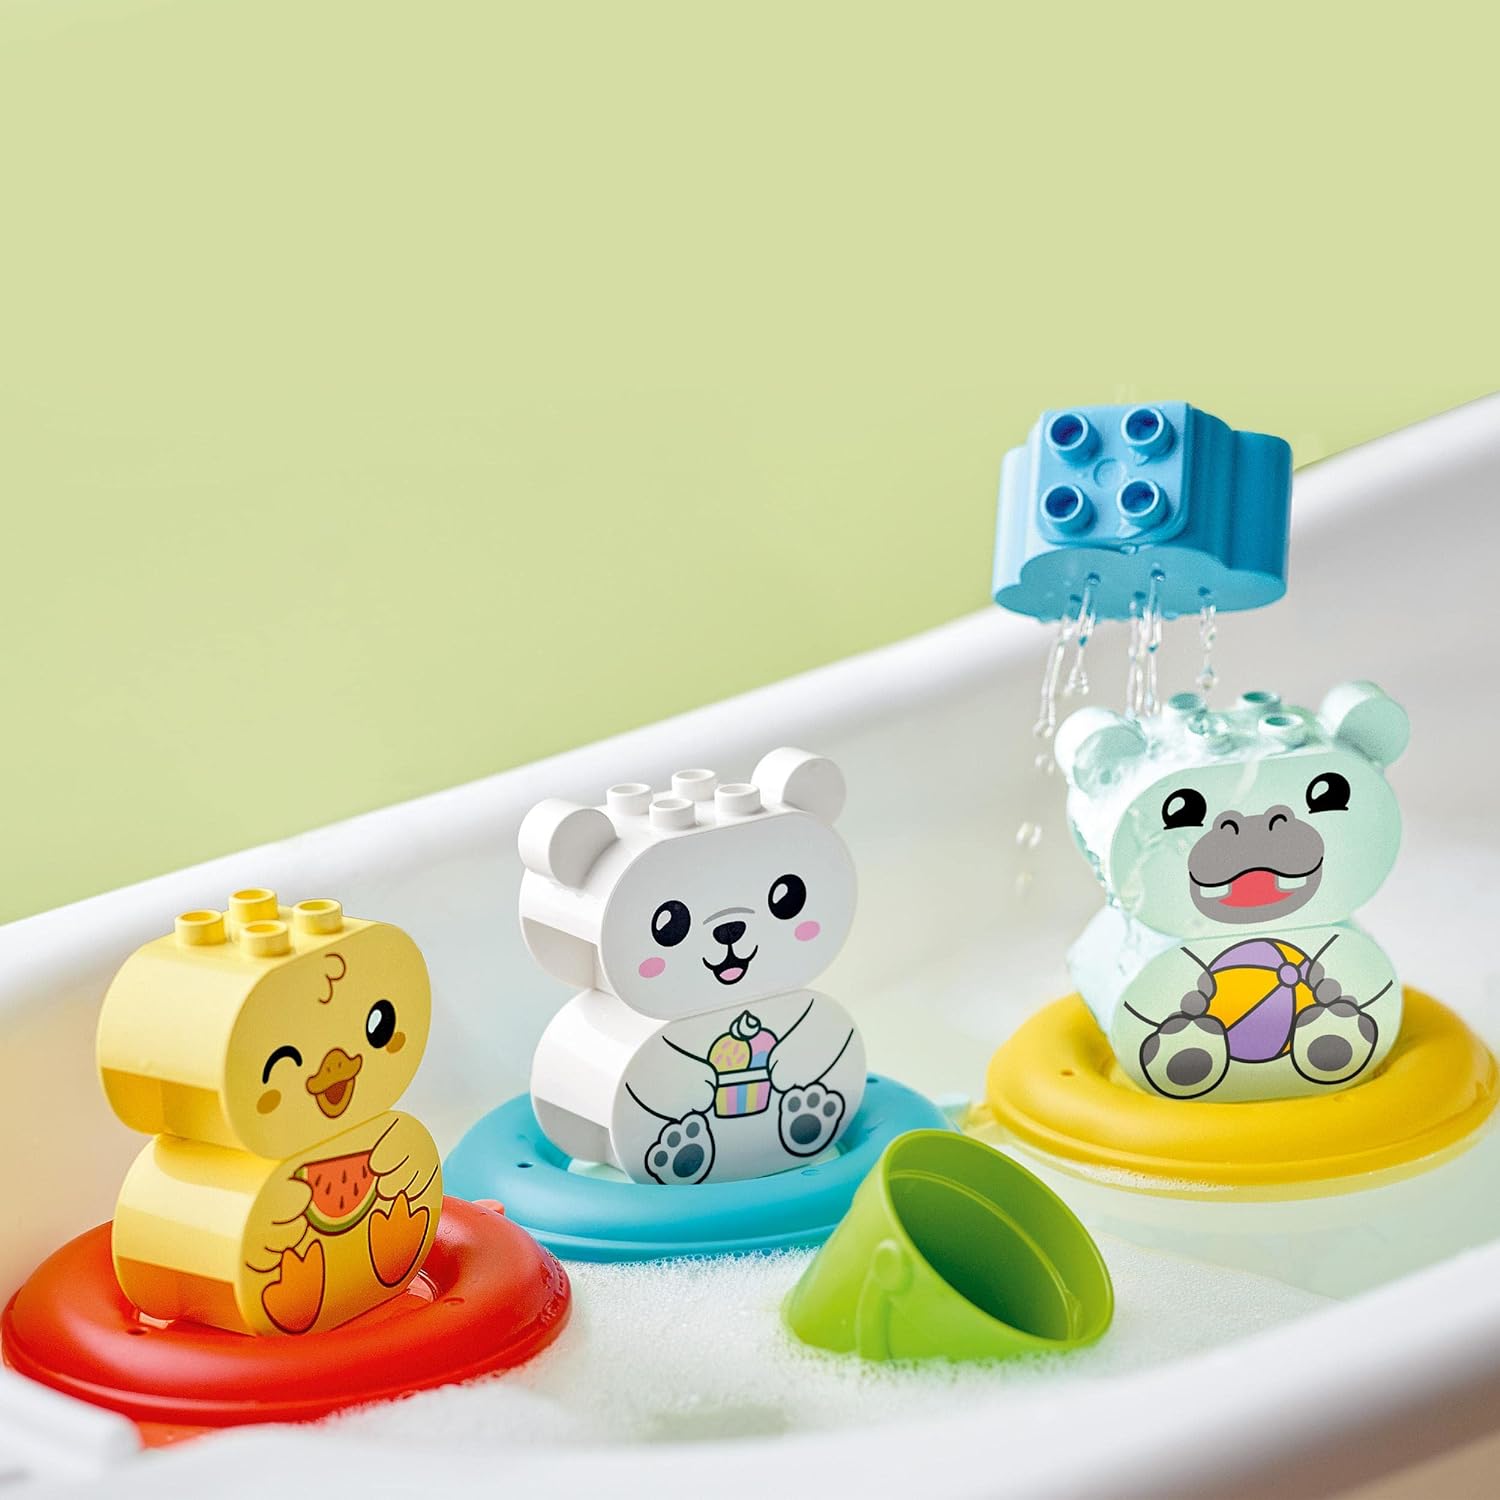 LEGO® DUPLO® Bath Time Fun: Floating Animal Train 